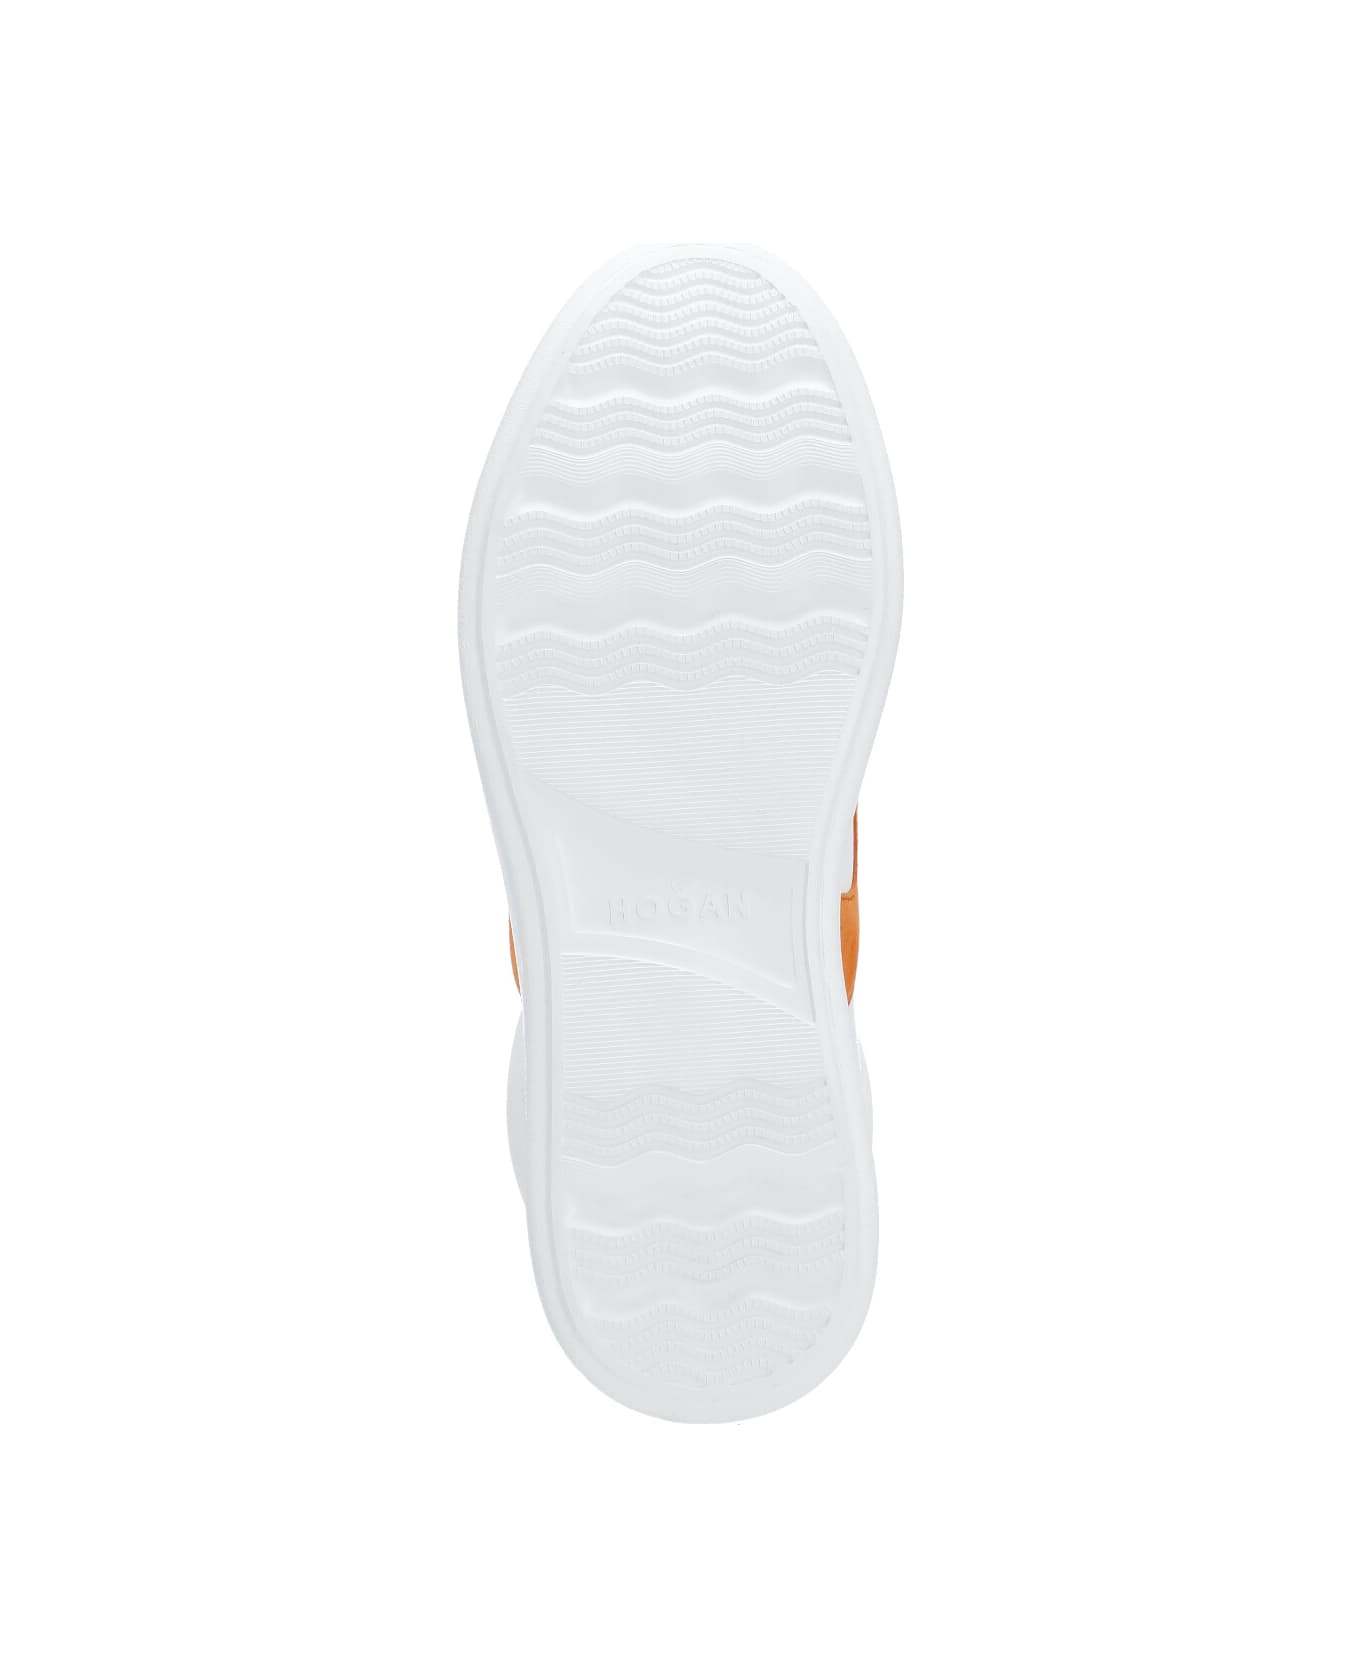 Hogan Rebel H564 Sneakers - White/light Blue/orange スニーカー